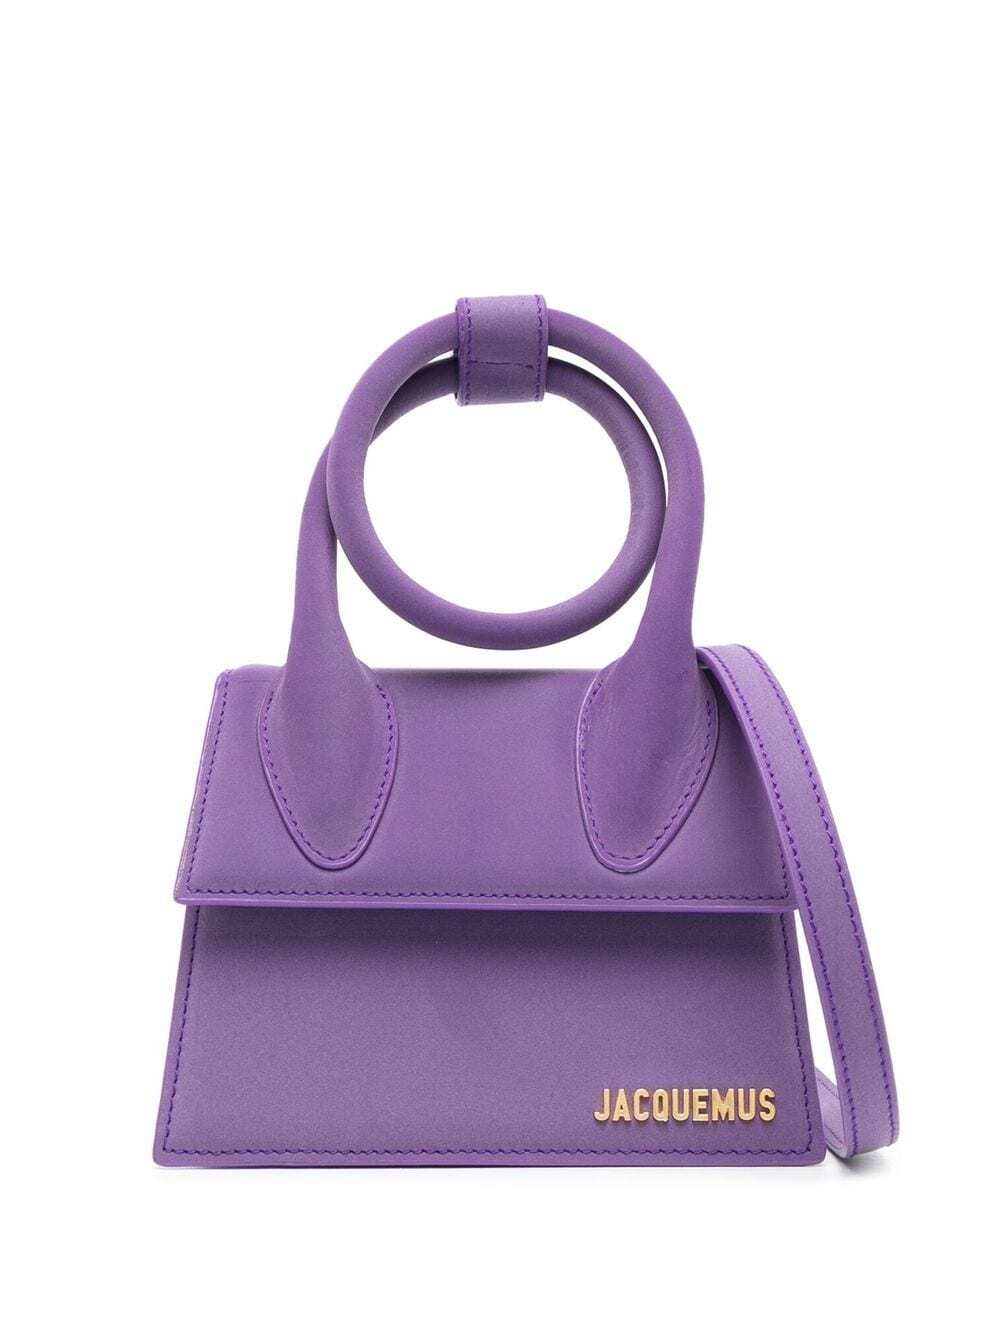 Jacquemus Le Chiquito Noeud shoulder bag - Purple